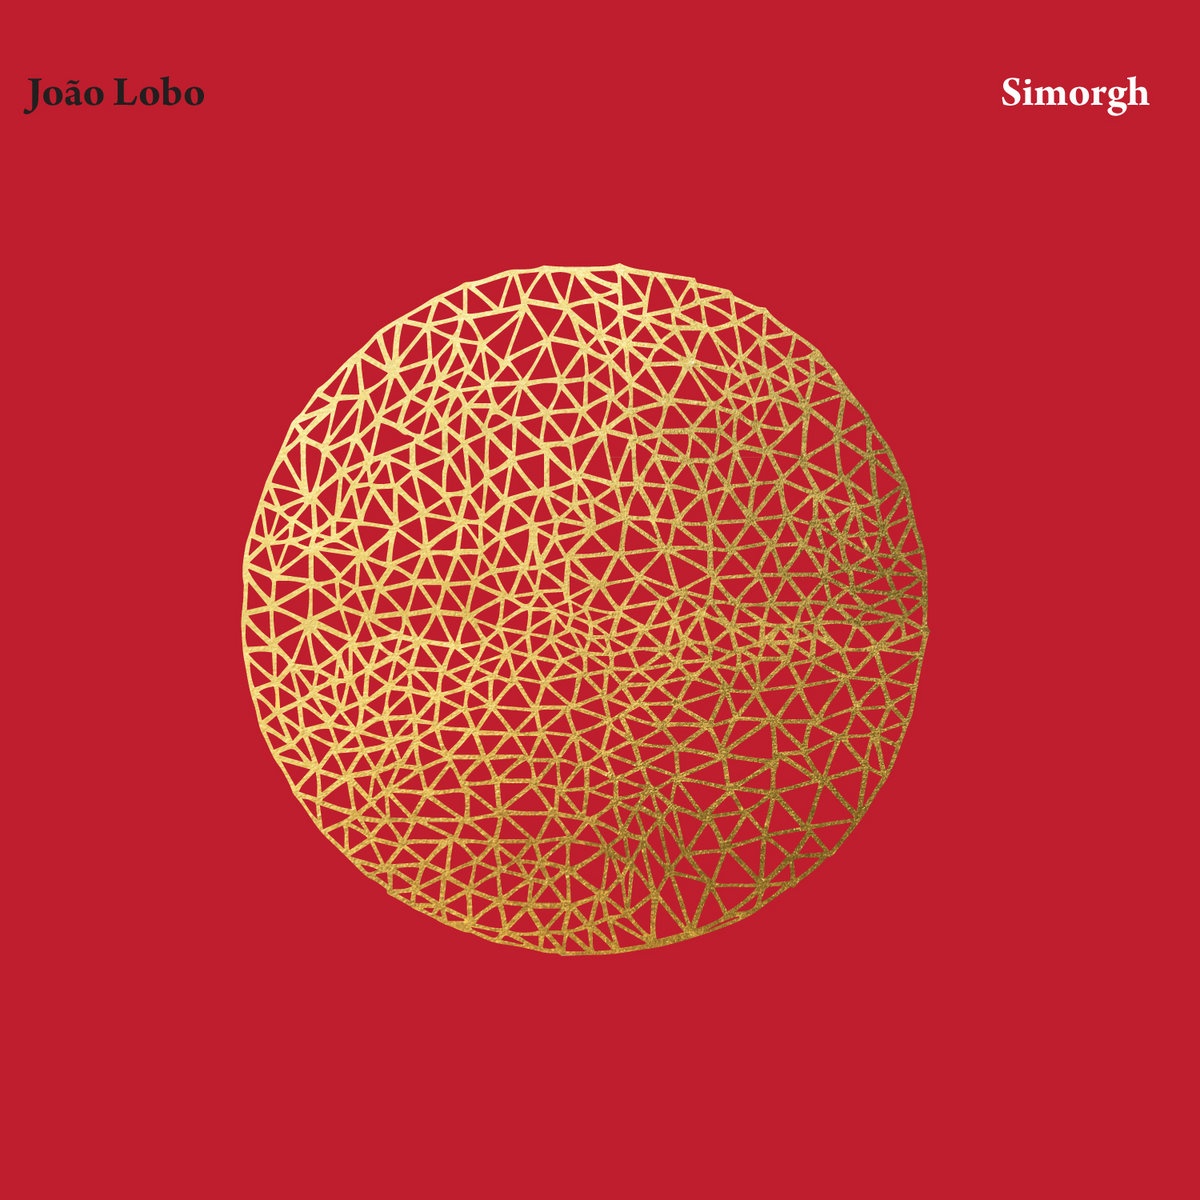 João Lobo - Simorgh vinyl cover